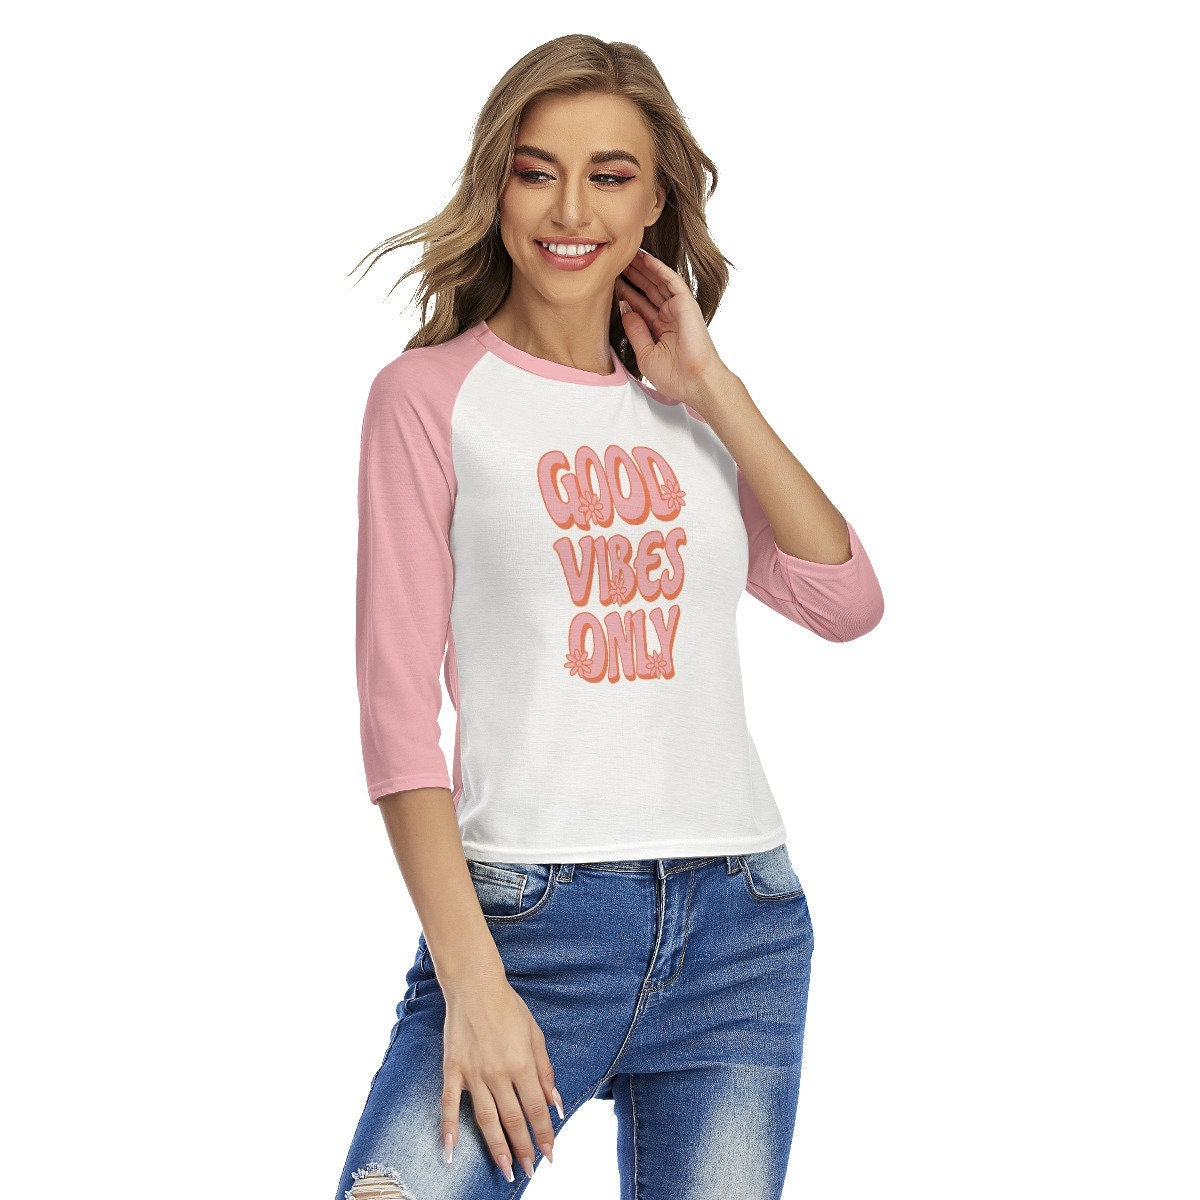 Retro Raglan Shirt, Raglan Tee, Pink Raglan Shirt, Retro Words Tshirt, Good Vibes Shirt,Retro Top Women, 70s style shirt, Raglan Shirt Women